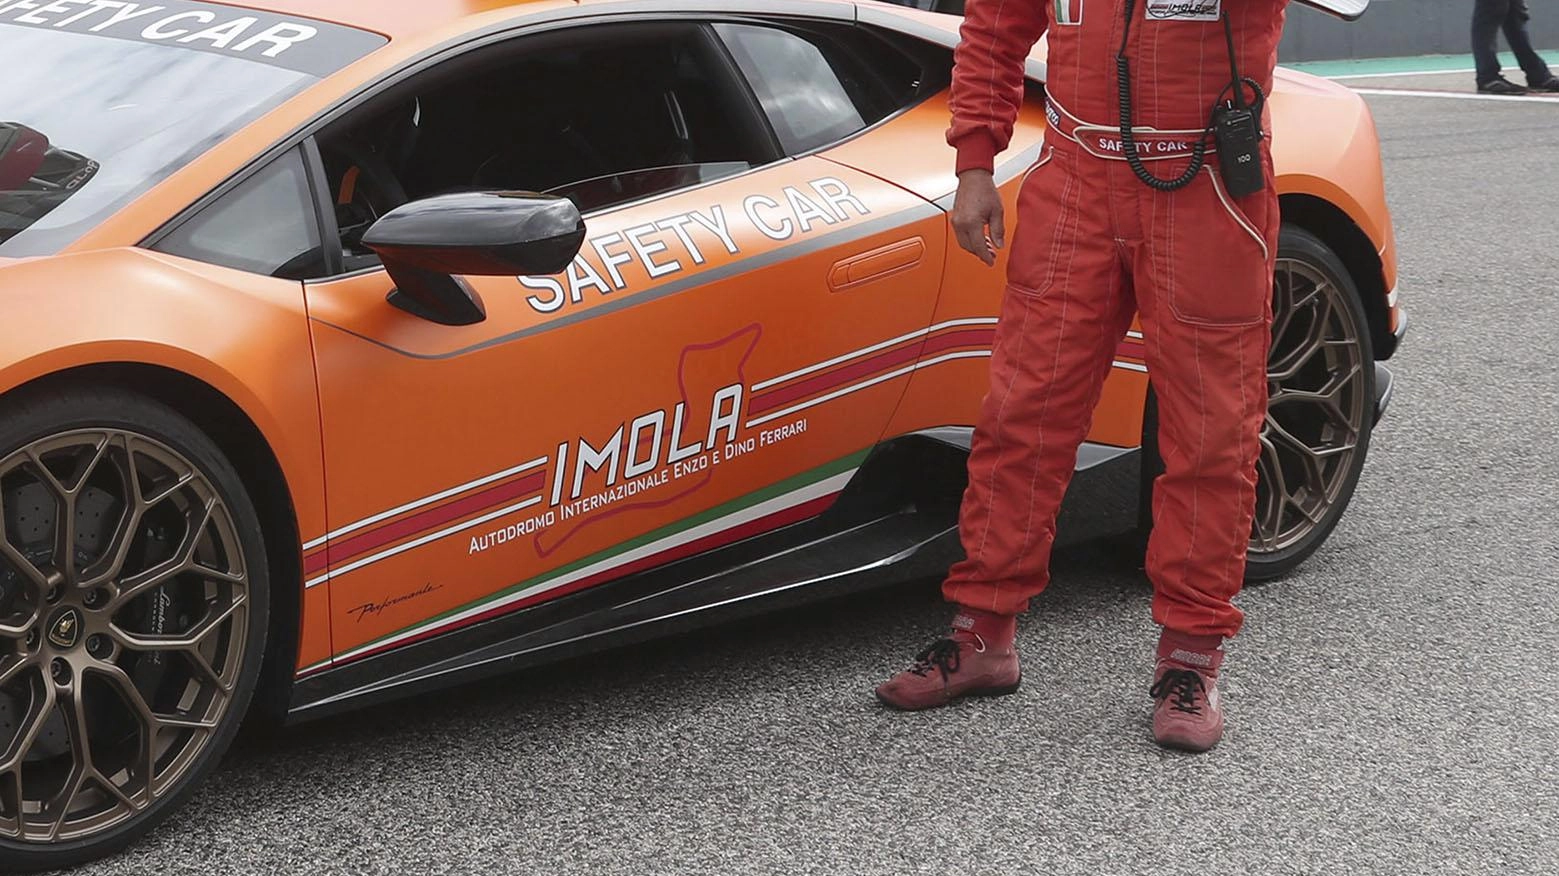 Claudio Poleselli, storico pilota della Safety car di Imola, racconta la sua passione per il circuito e i momenti più emozionanti vissuti in pista, tra velocità e adrenalina.